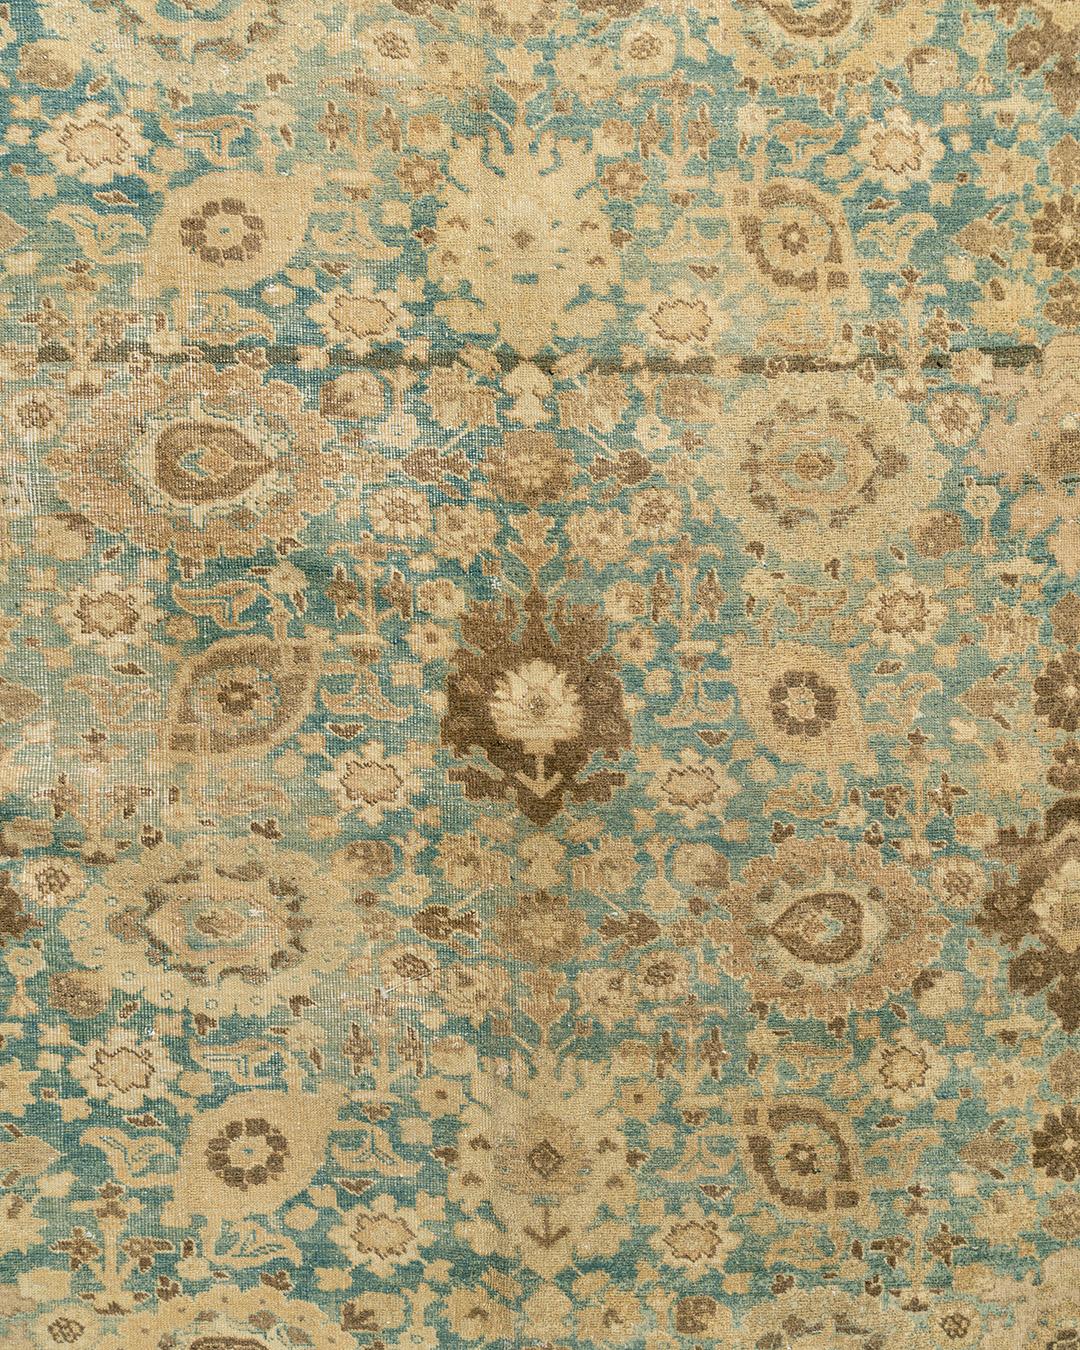 Antiker persischer Täbriz-Teppich, um 1900 10'9 x 15'6'. Eine kleine Musterversion des beliebten Harschang-Musters (Krabbe) mit Palmetten, Rosetten und Blättern in verschiedenen Stilen bedeckt dicht den hellblauen Grund dieses fein gewebten urbanen